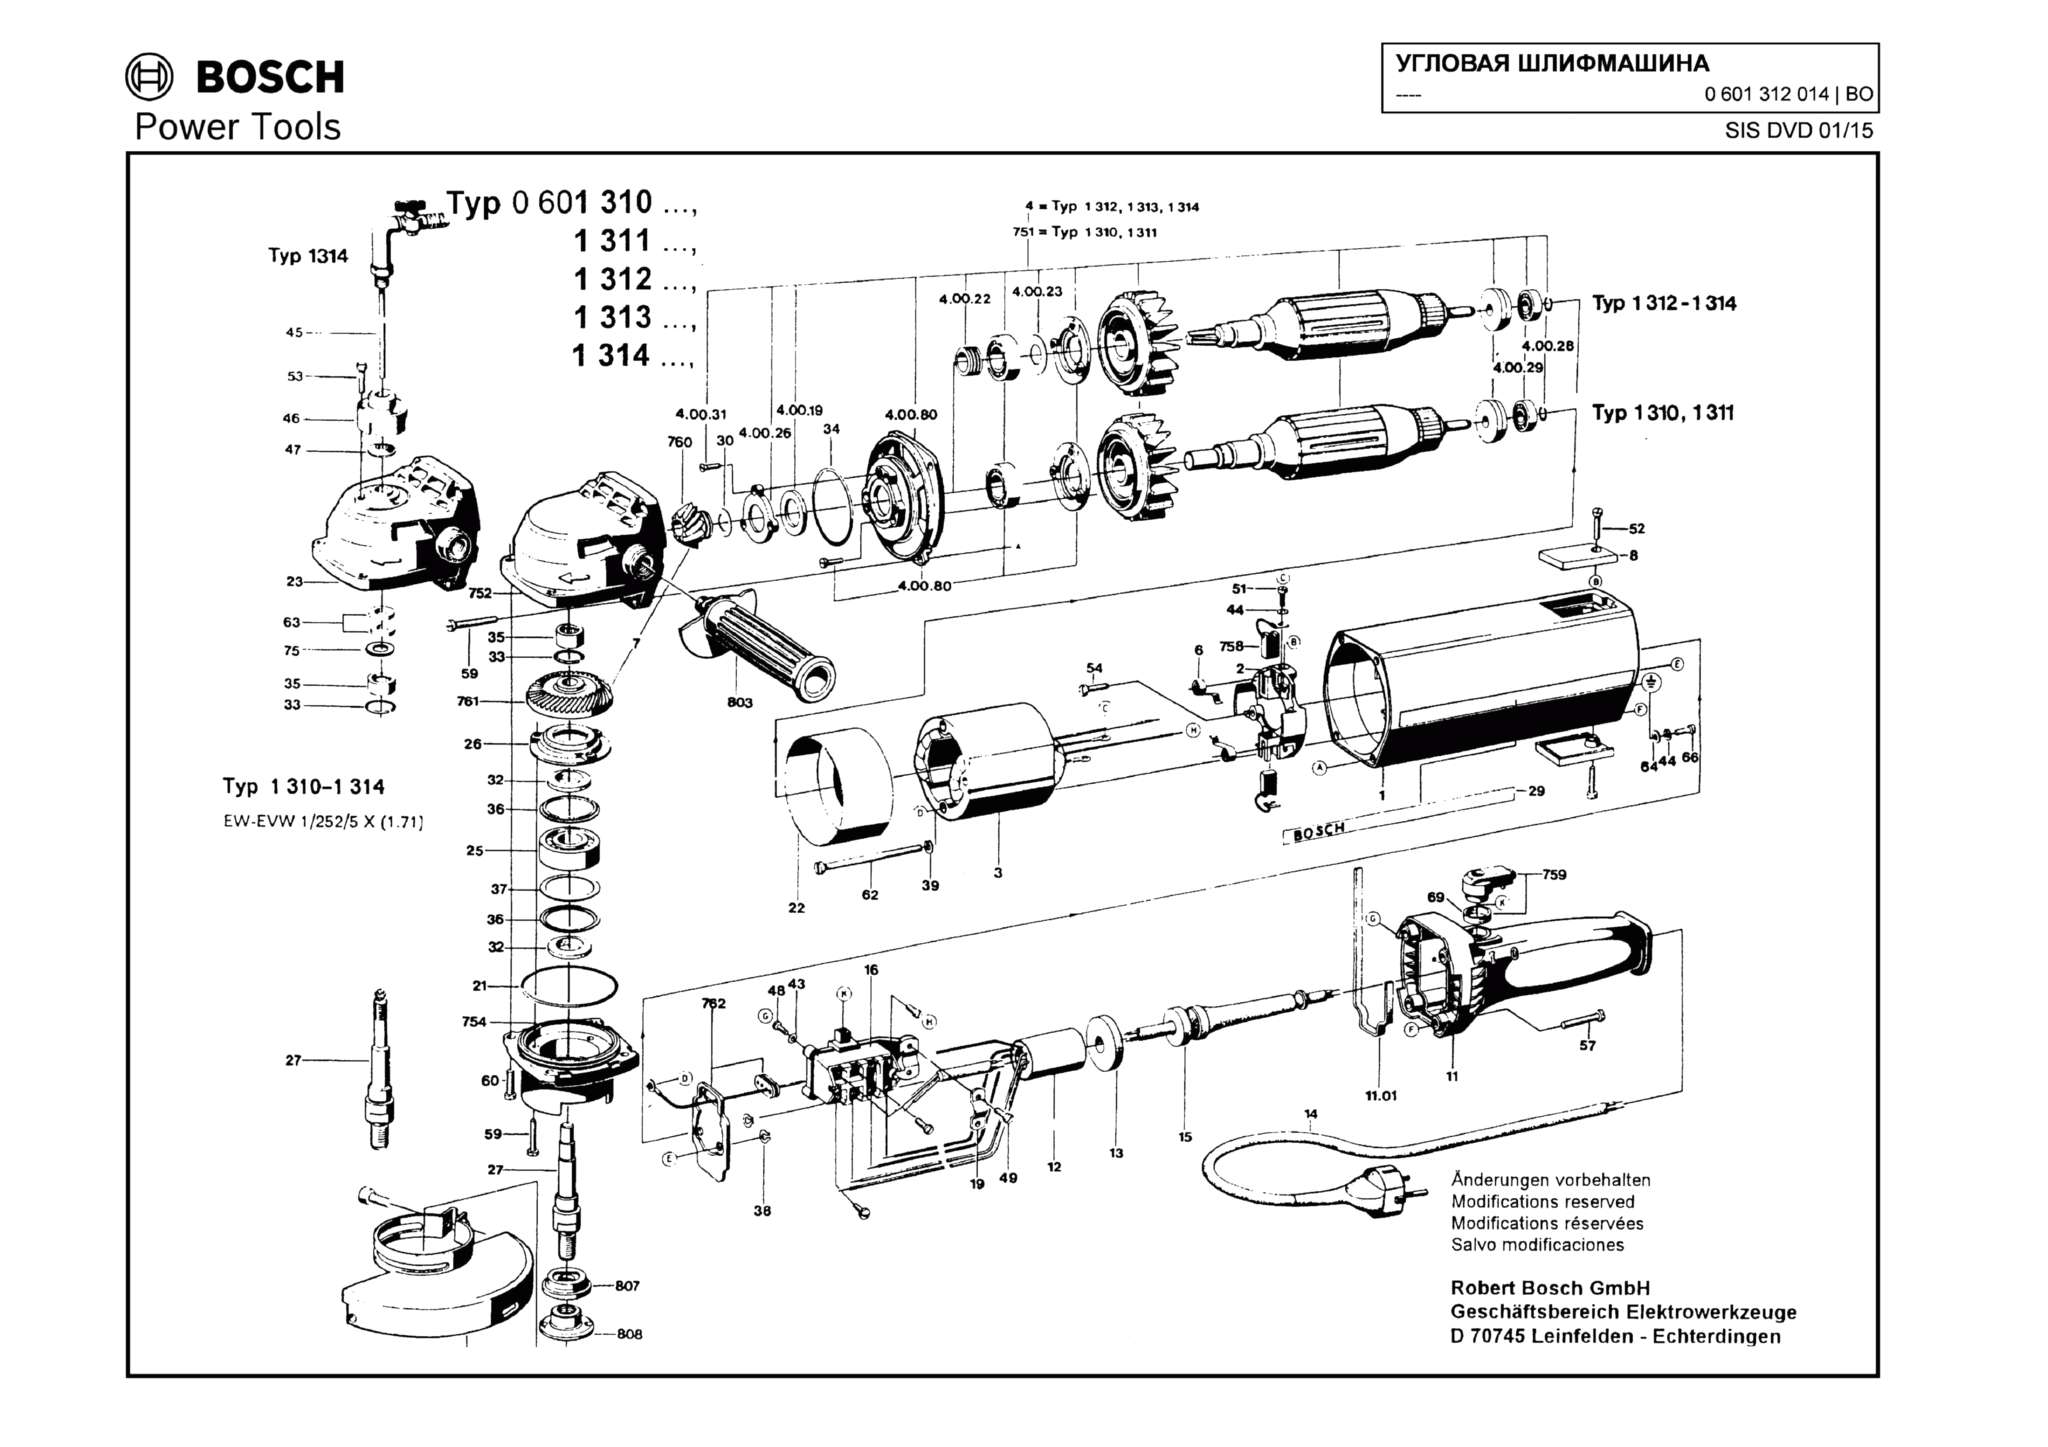 Запчасти, схема и деталировка Bosch (ТИП 0601312014)